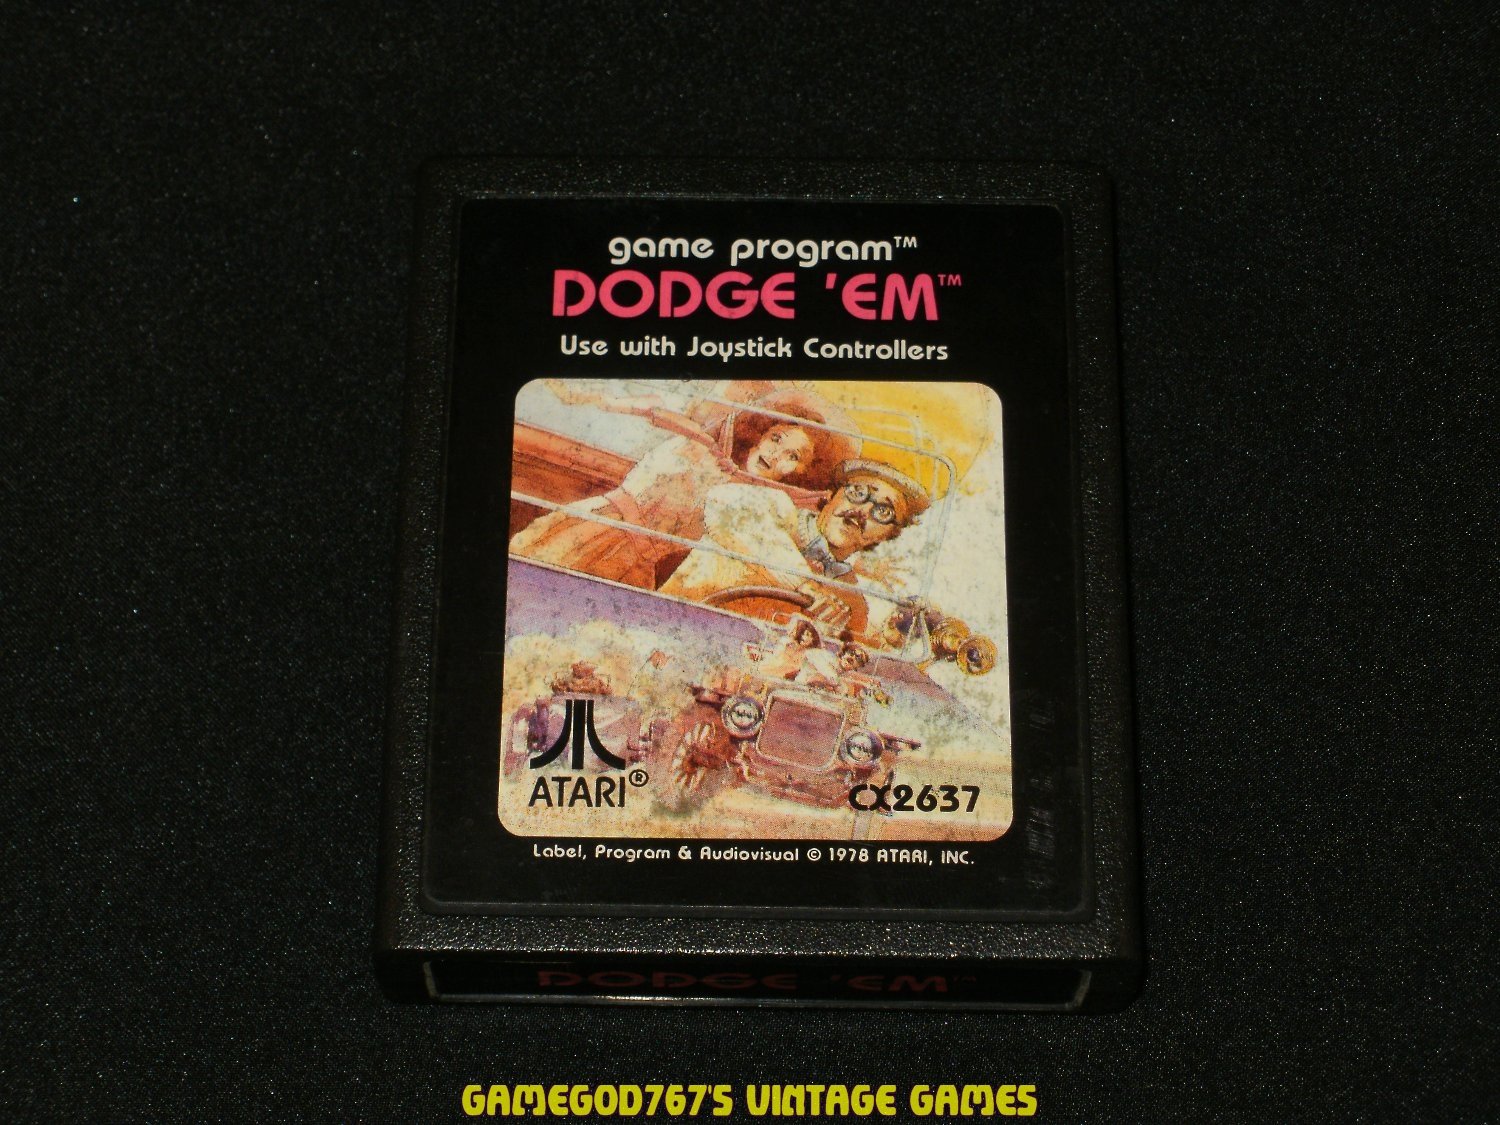 Dodge 'Em - Atari 2600 - 1981 Picture Label Version